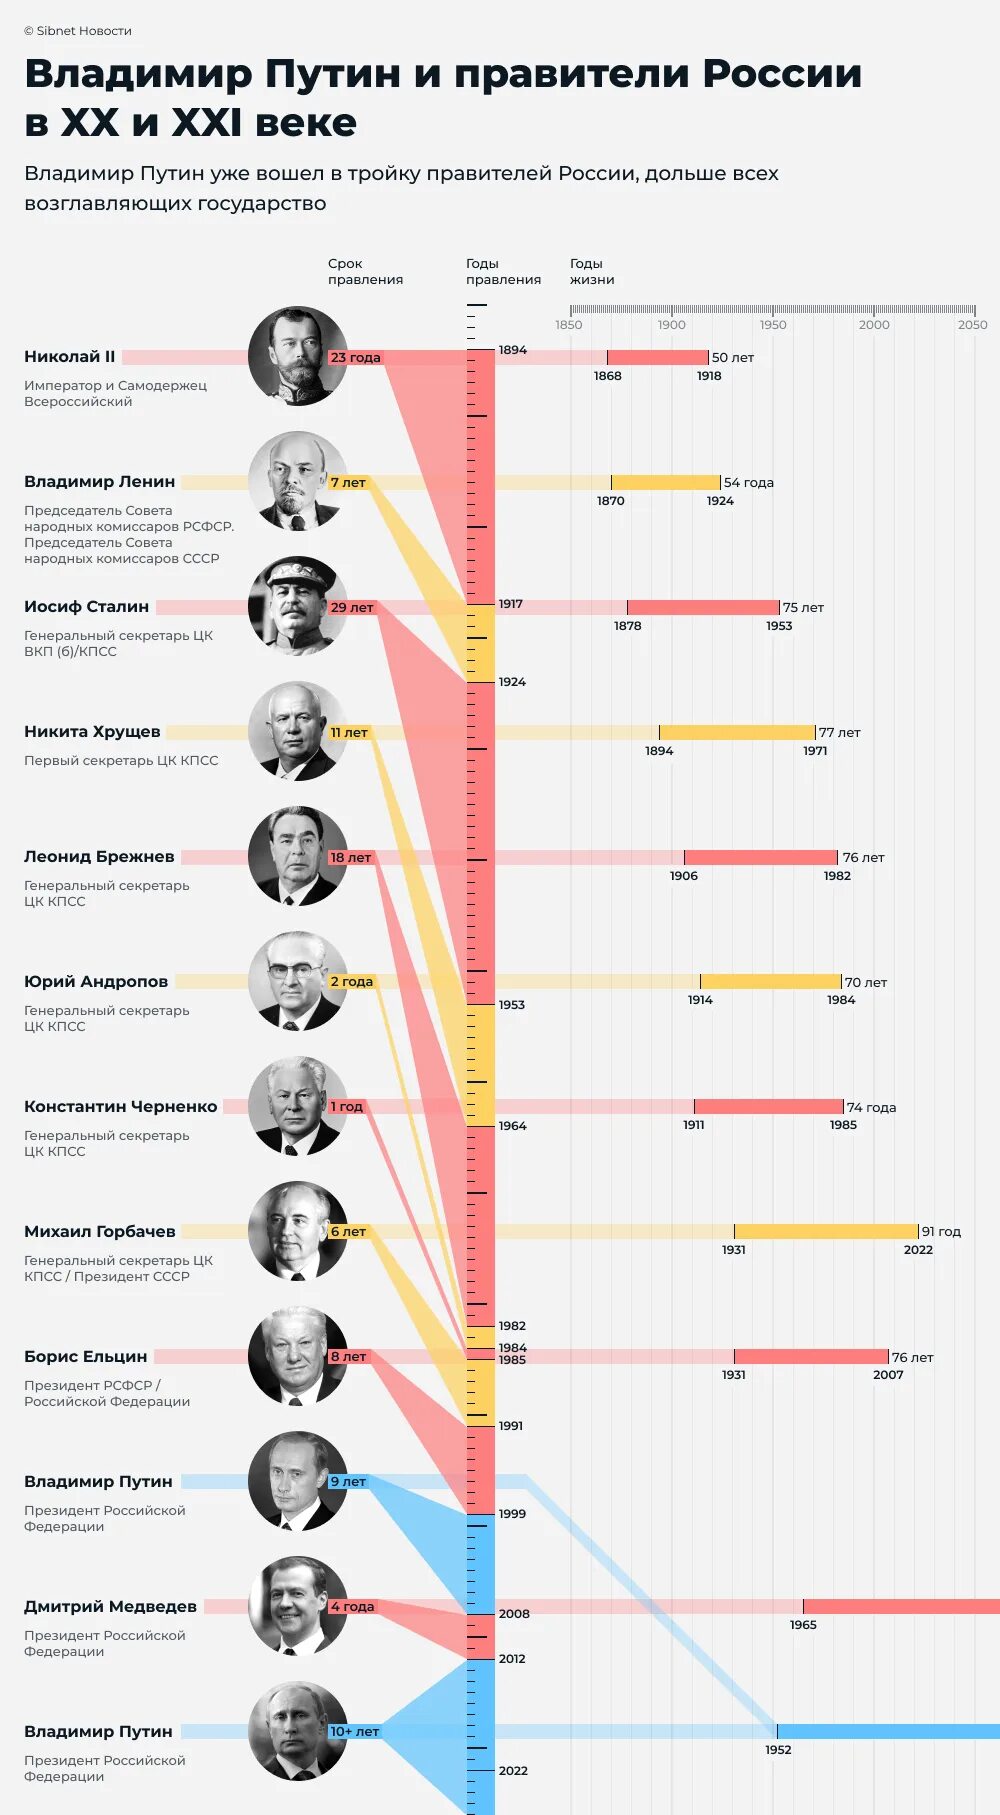 Президента 2024 году Путина. Кто будет президентом после Путина в 2024. Как распределяются голоса на выборах президента 2024